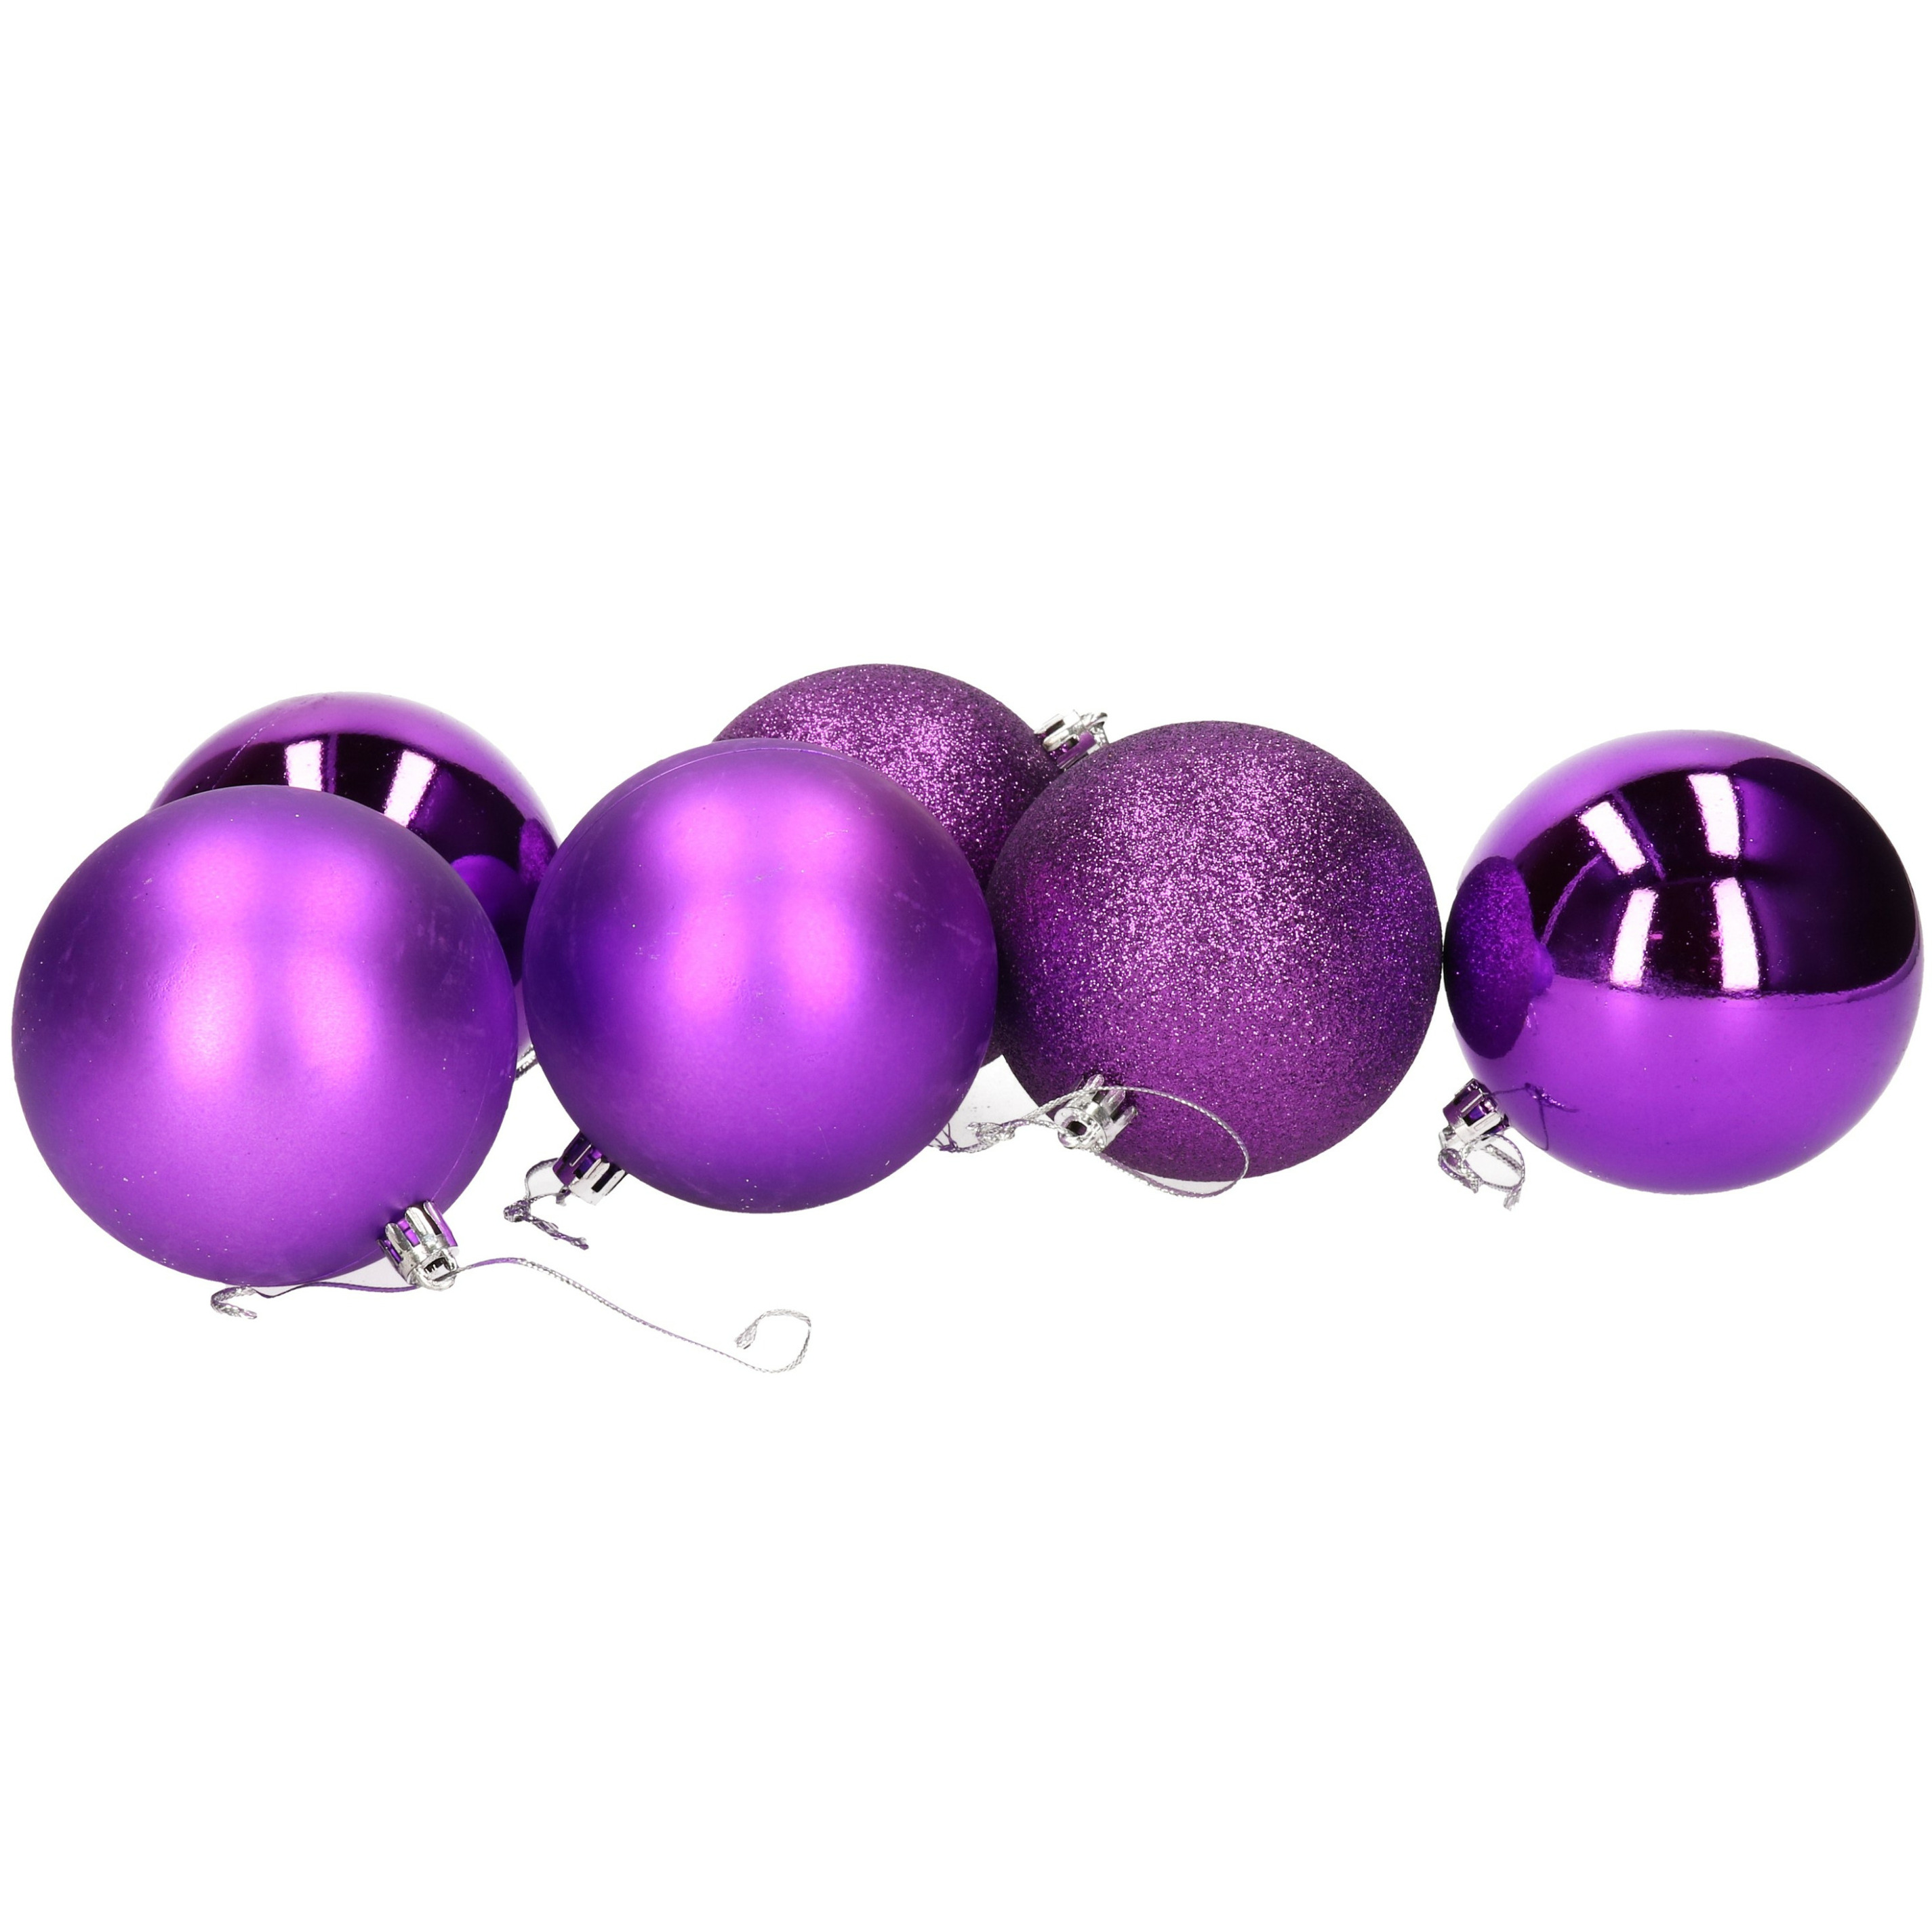 6x stuks kerstballen paars mix van mat-glans-glitter kunststof 8 cm